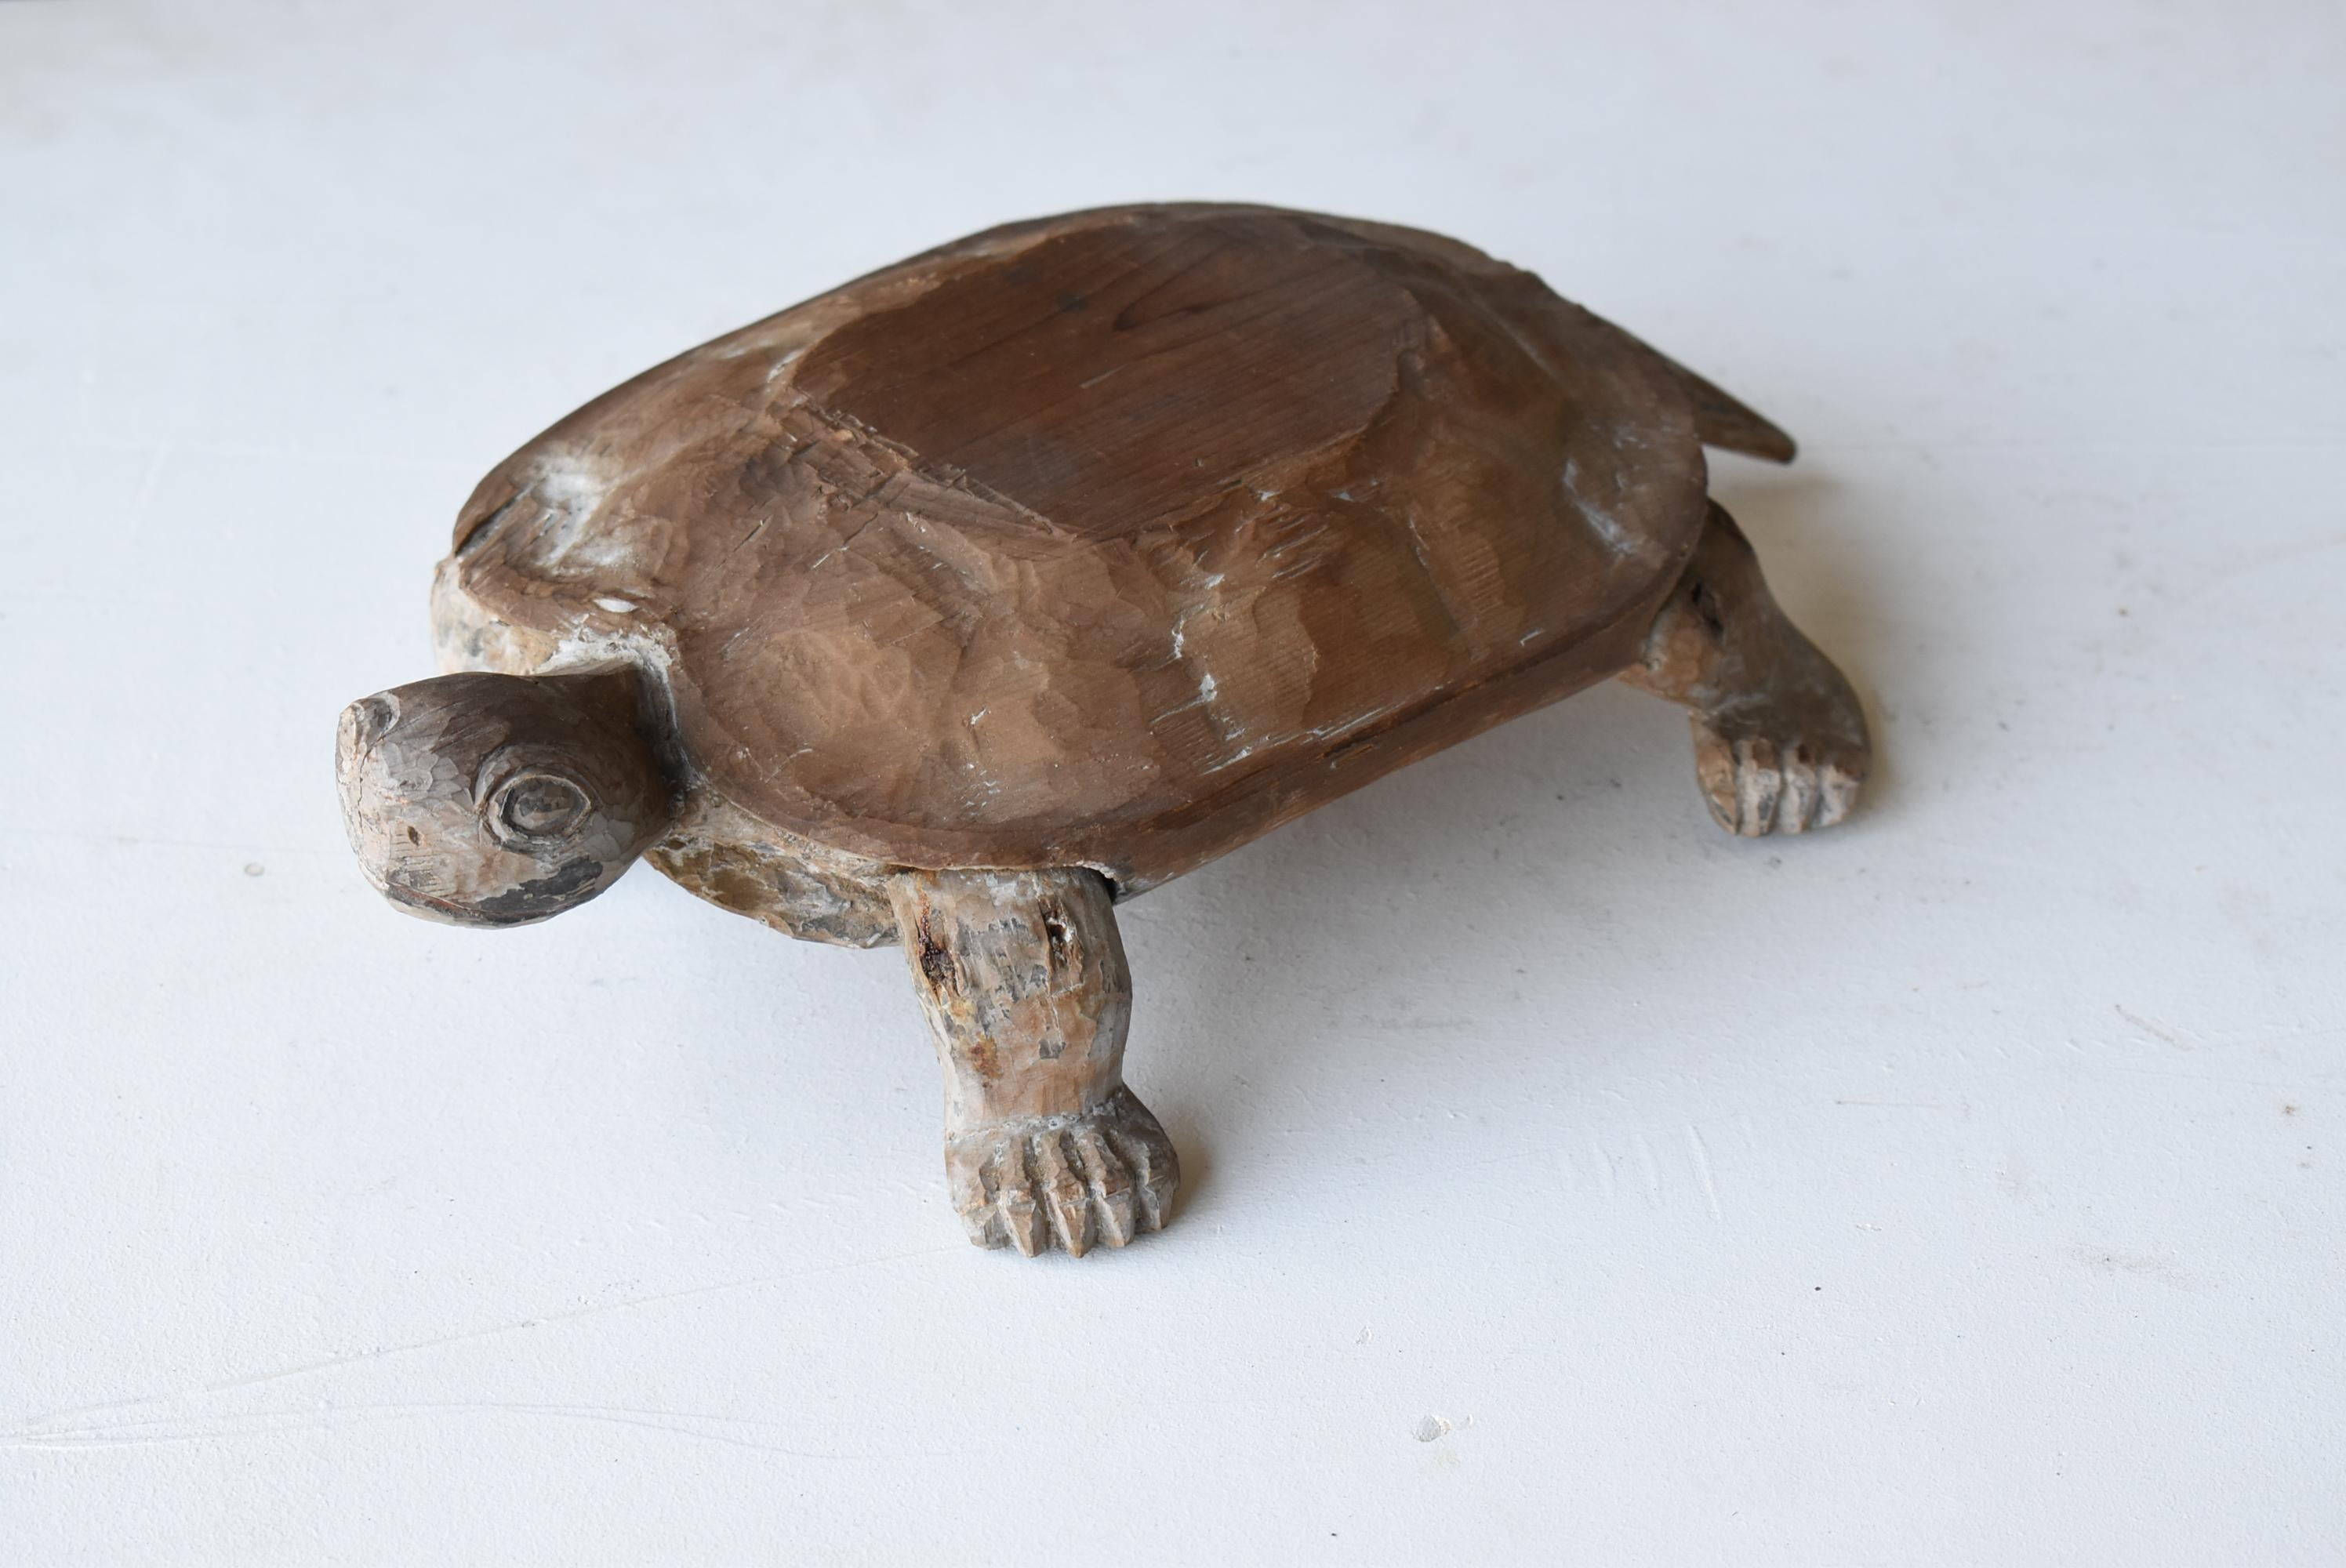 Dies ist eine sehr alte japanische geschnitzte Holzschildkröte.
Dieser Artikel stammt aus der Edo-Periode (1800er-1860er Jahre).
Er ist aus Zedernholz gefertigt.
Sehr seltenes Stück.

Schildkröten gelten in Japan seit dem Altertum als